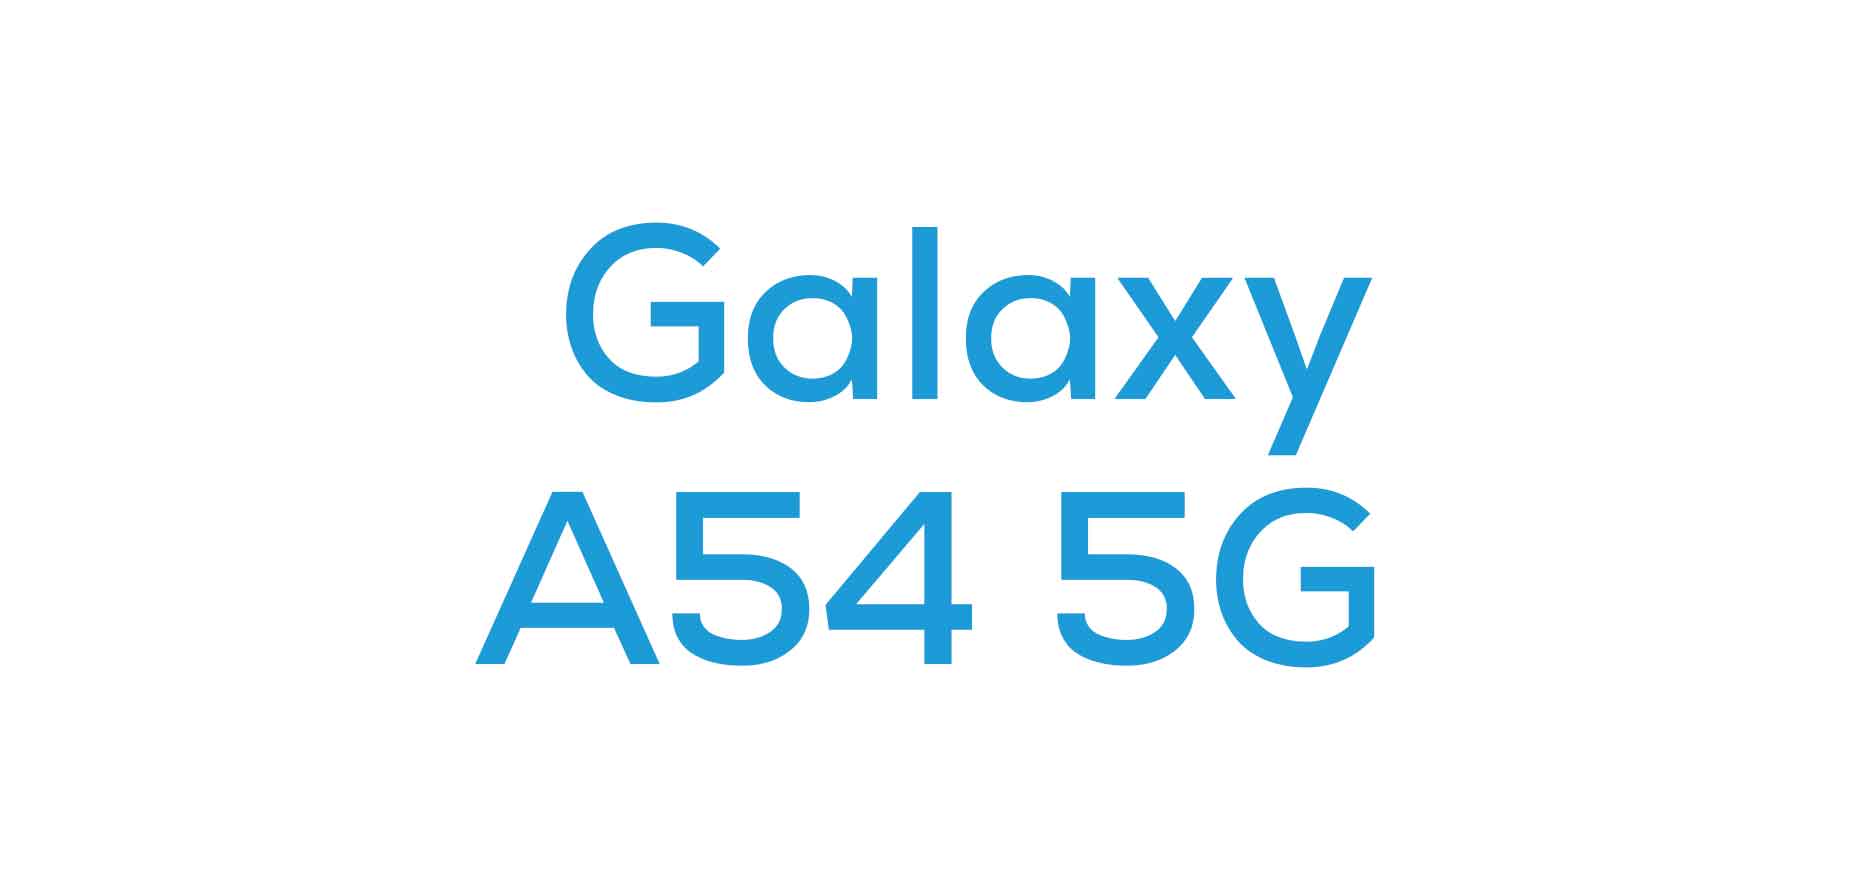 Galaxy A54 5G Cases